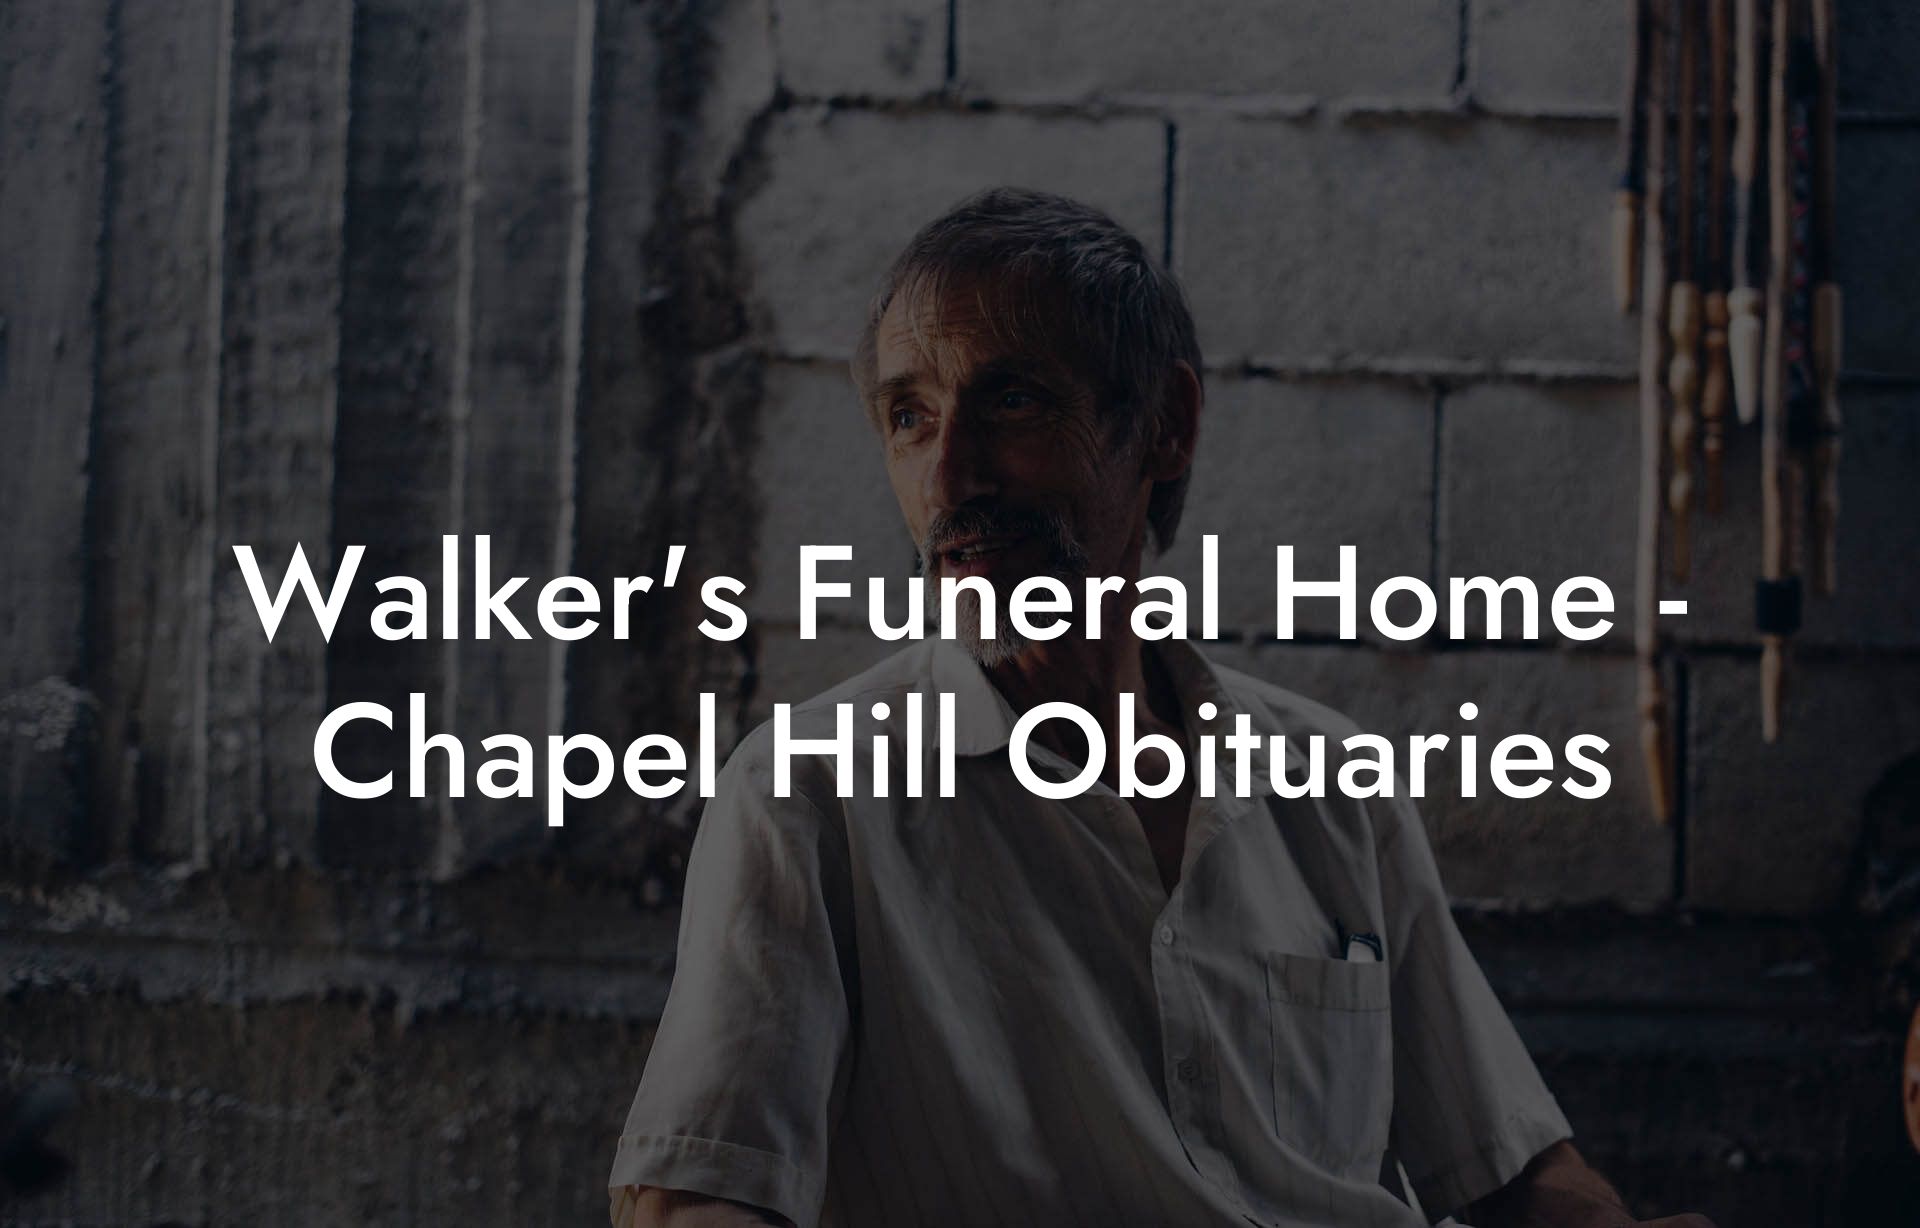 Walker's Funeral Home - Chapel Hill Obituaries